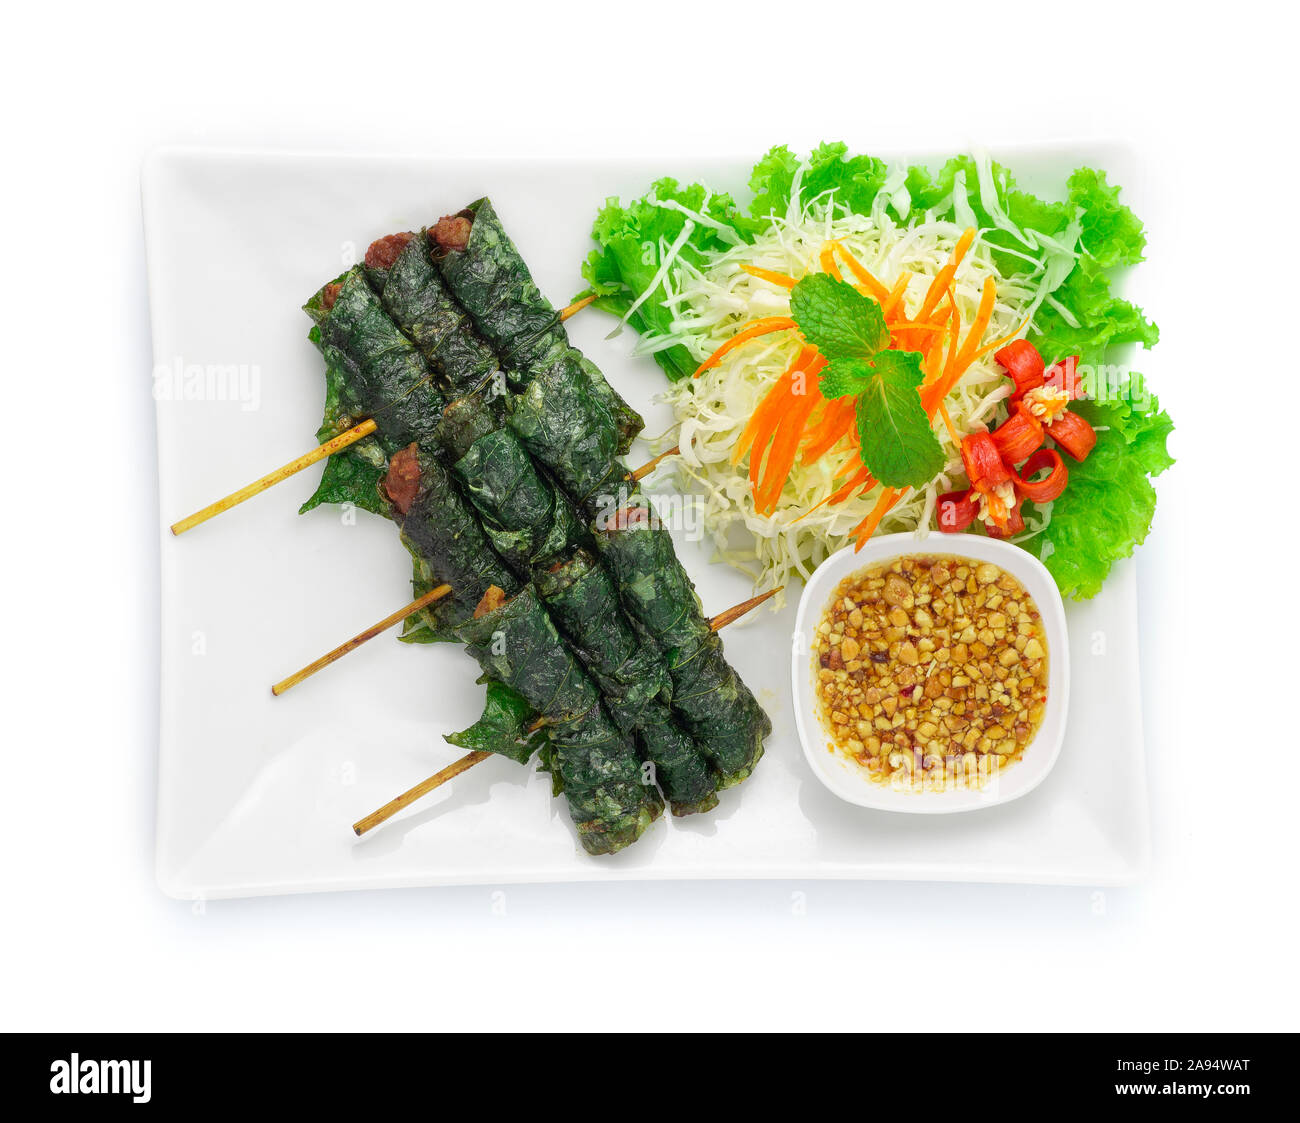 La nourriture vietnamienne porc frit enveloppés dans des feuilles sauvages vidéo à la demande au paiement à la sauce aux arachides sucrées servi mélange haché Fusion Food style vietnamien décorer avec un chou en tranches Banque D'Images